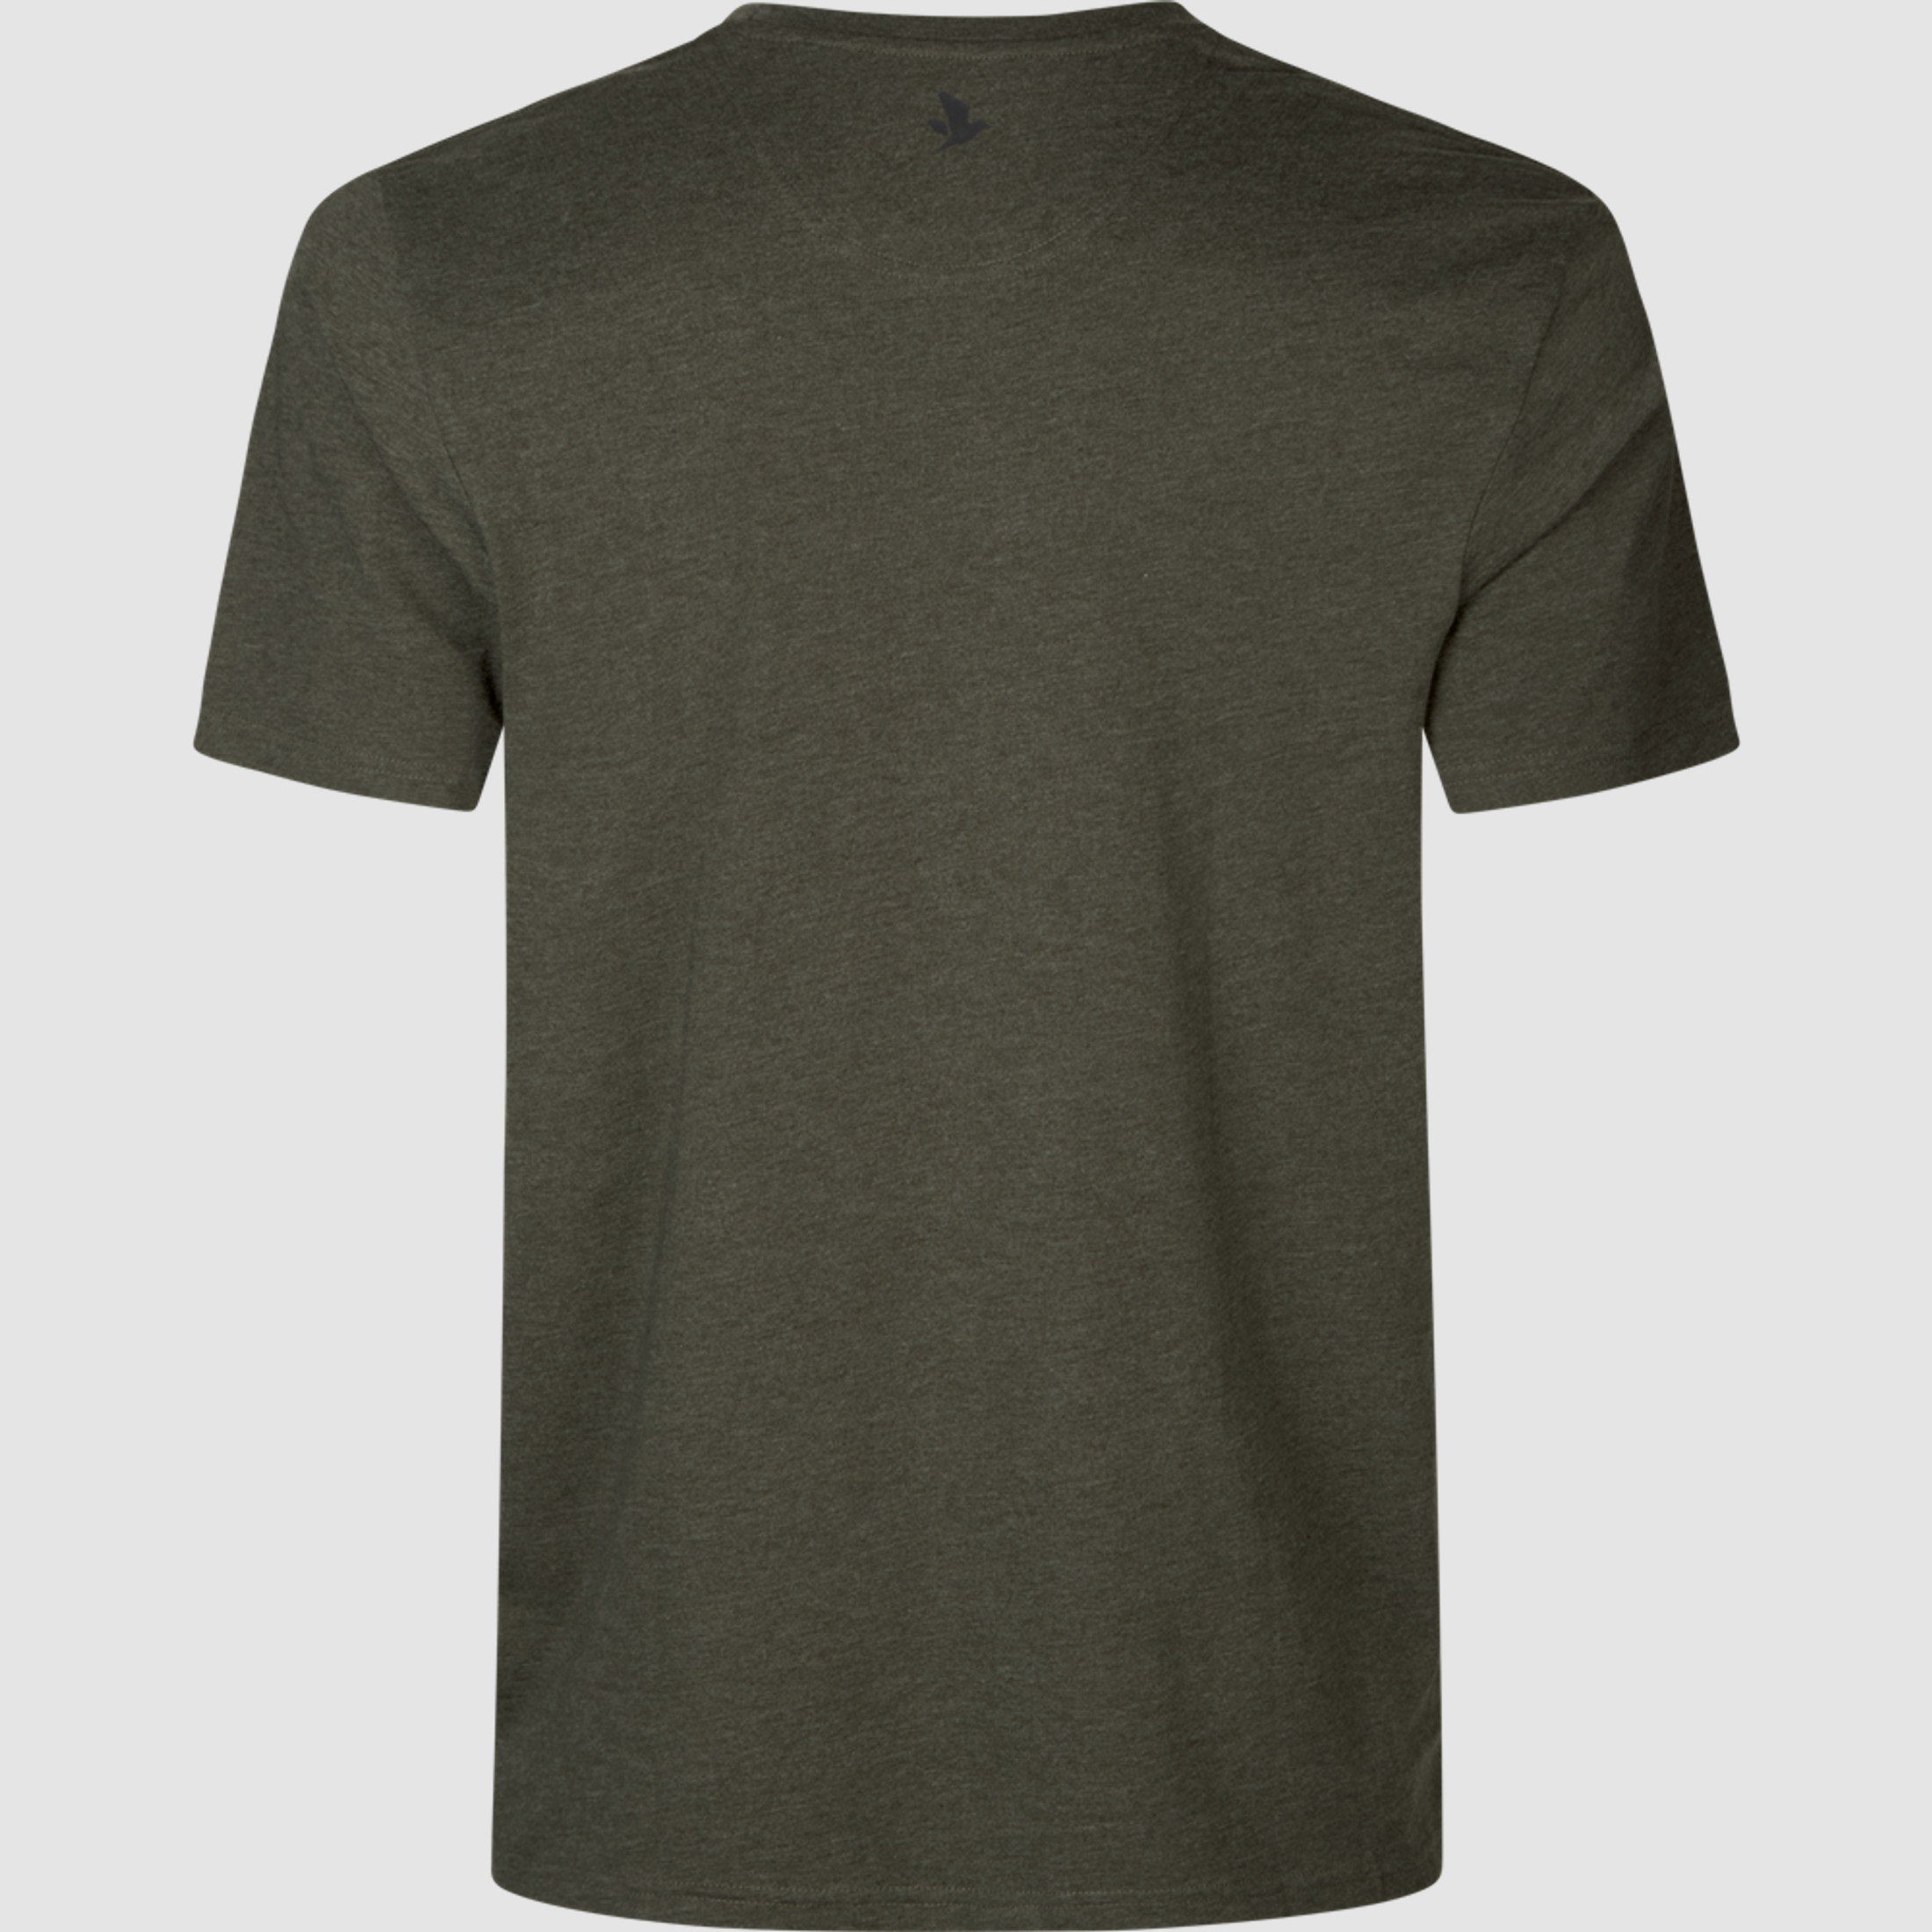 Buck Fever T-shirt | Seeland